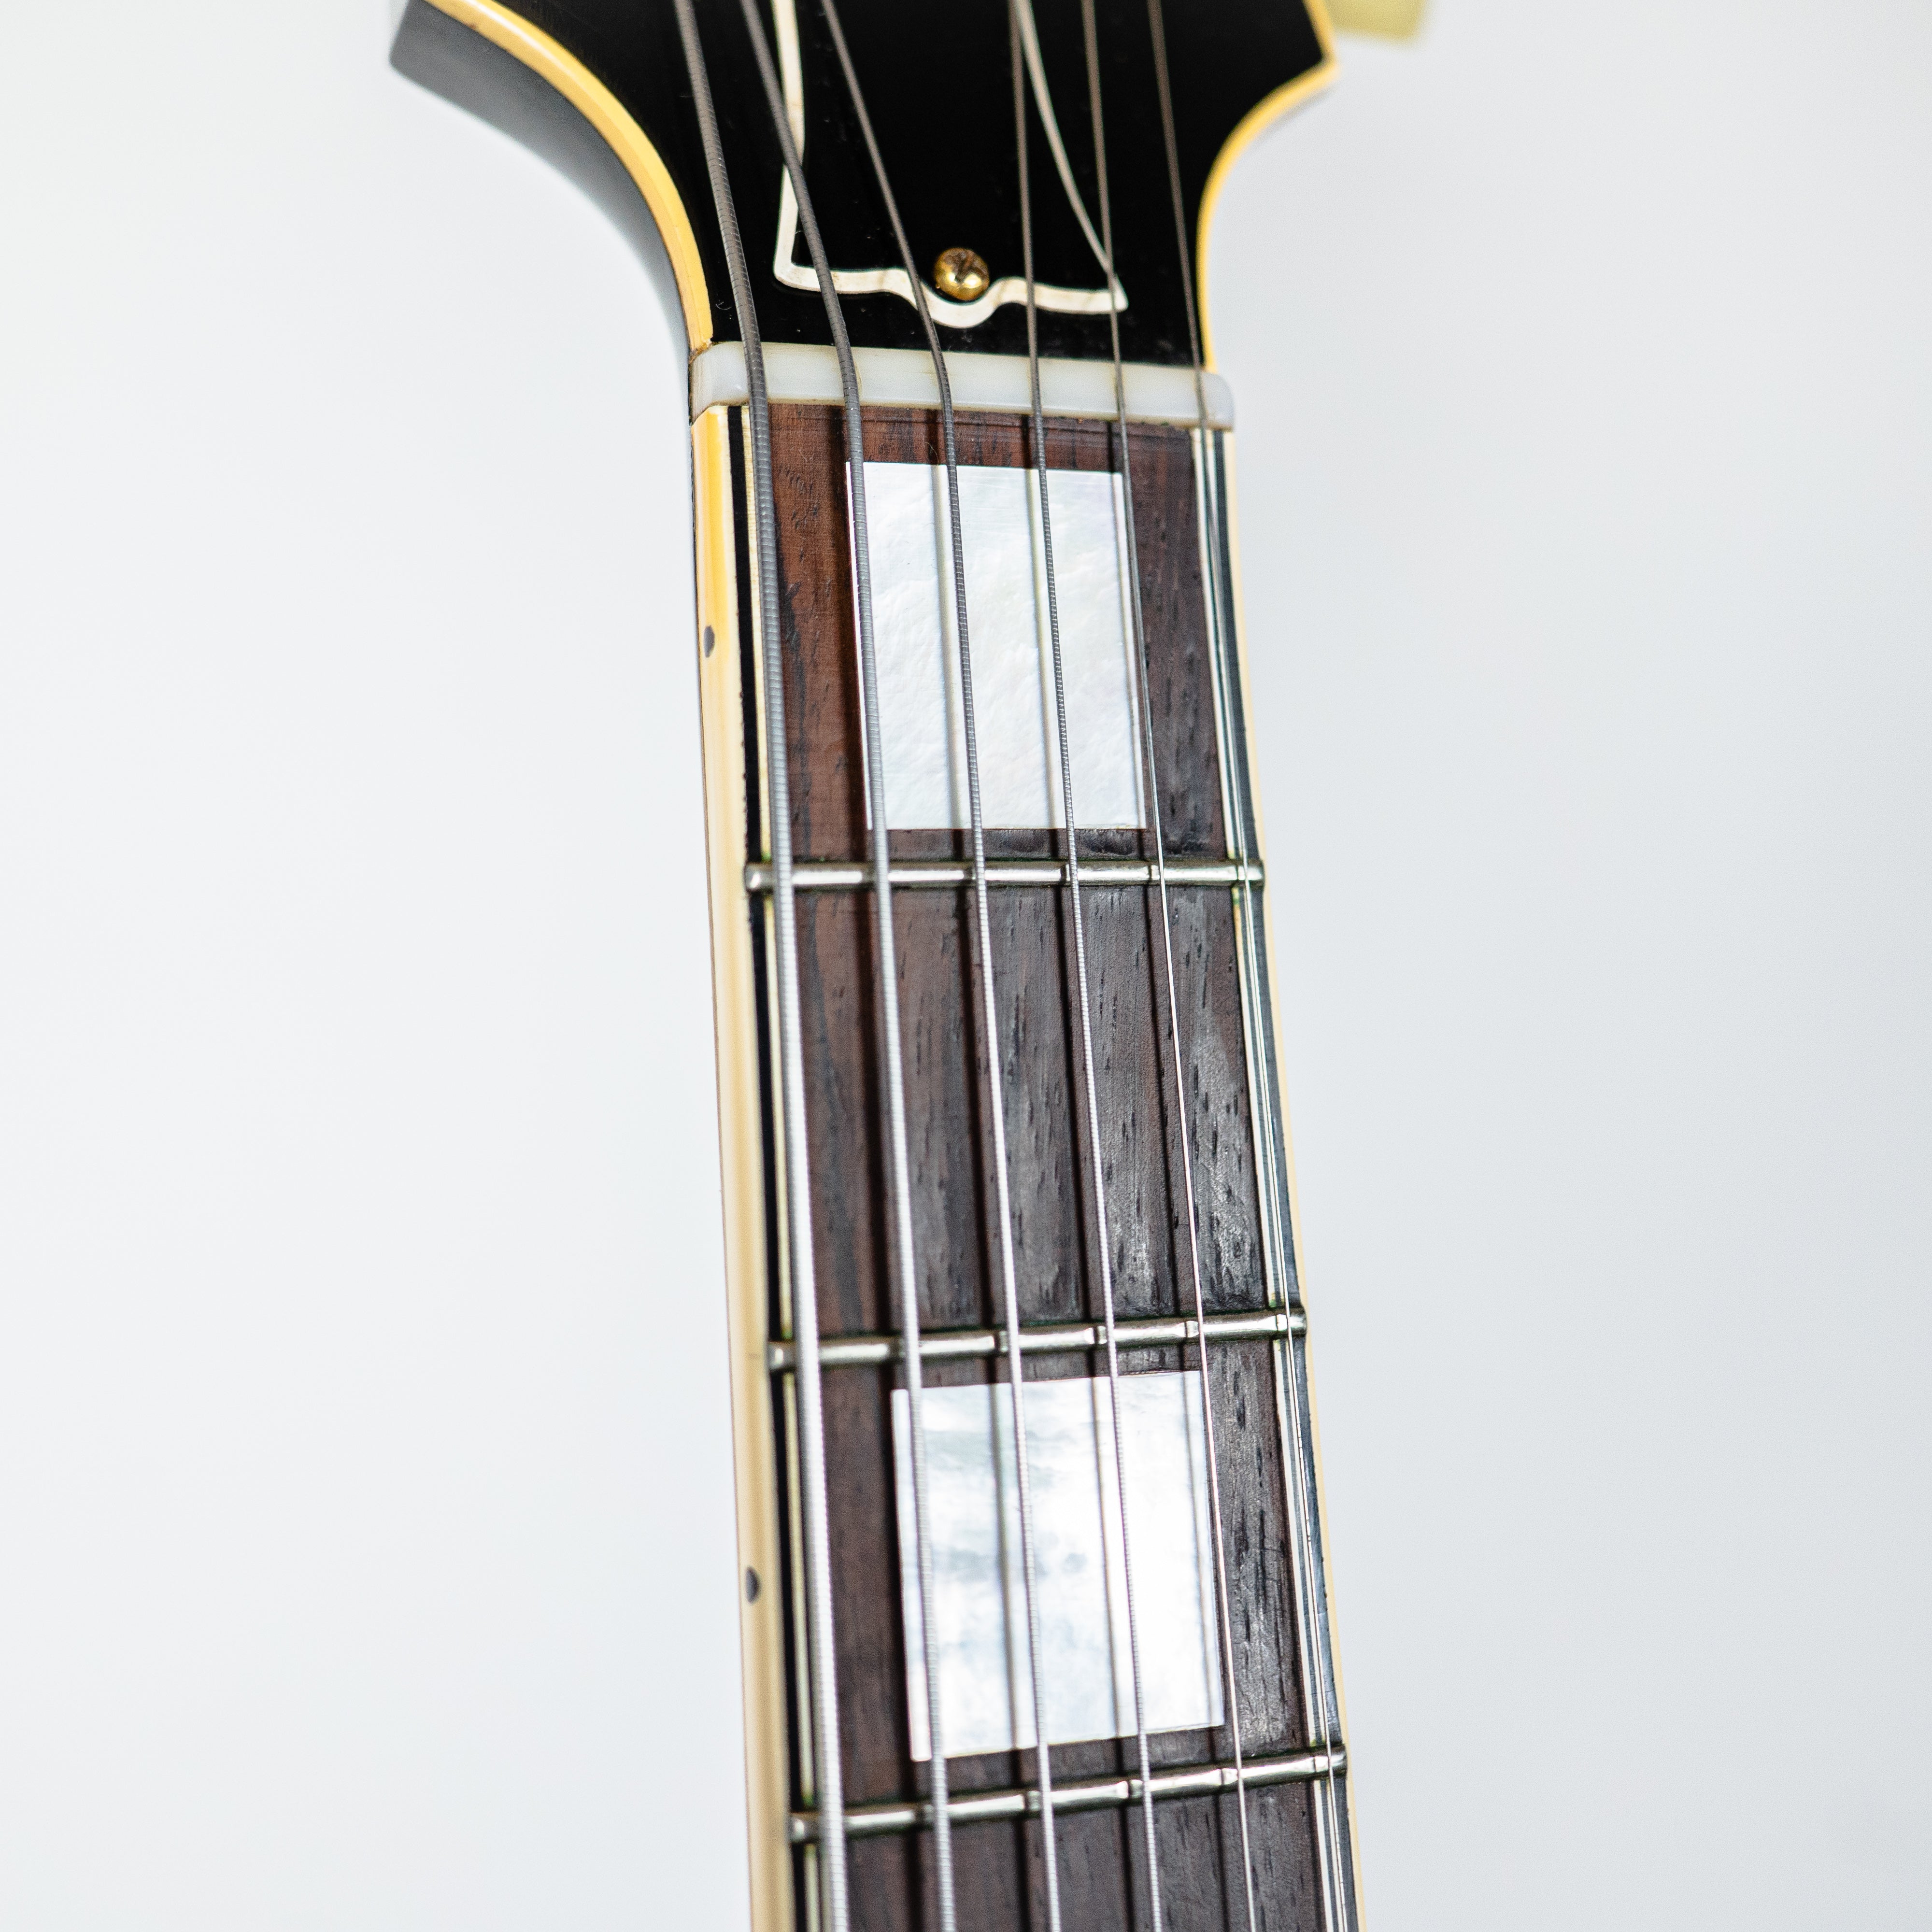 Gibson 1949 ES-5